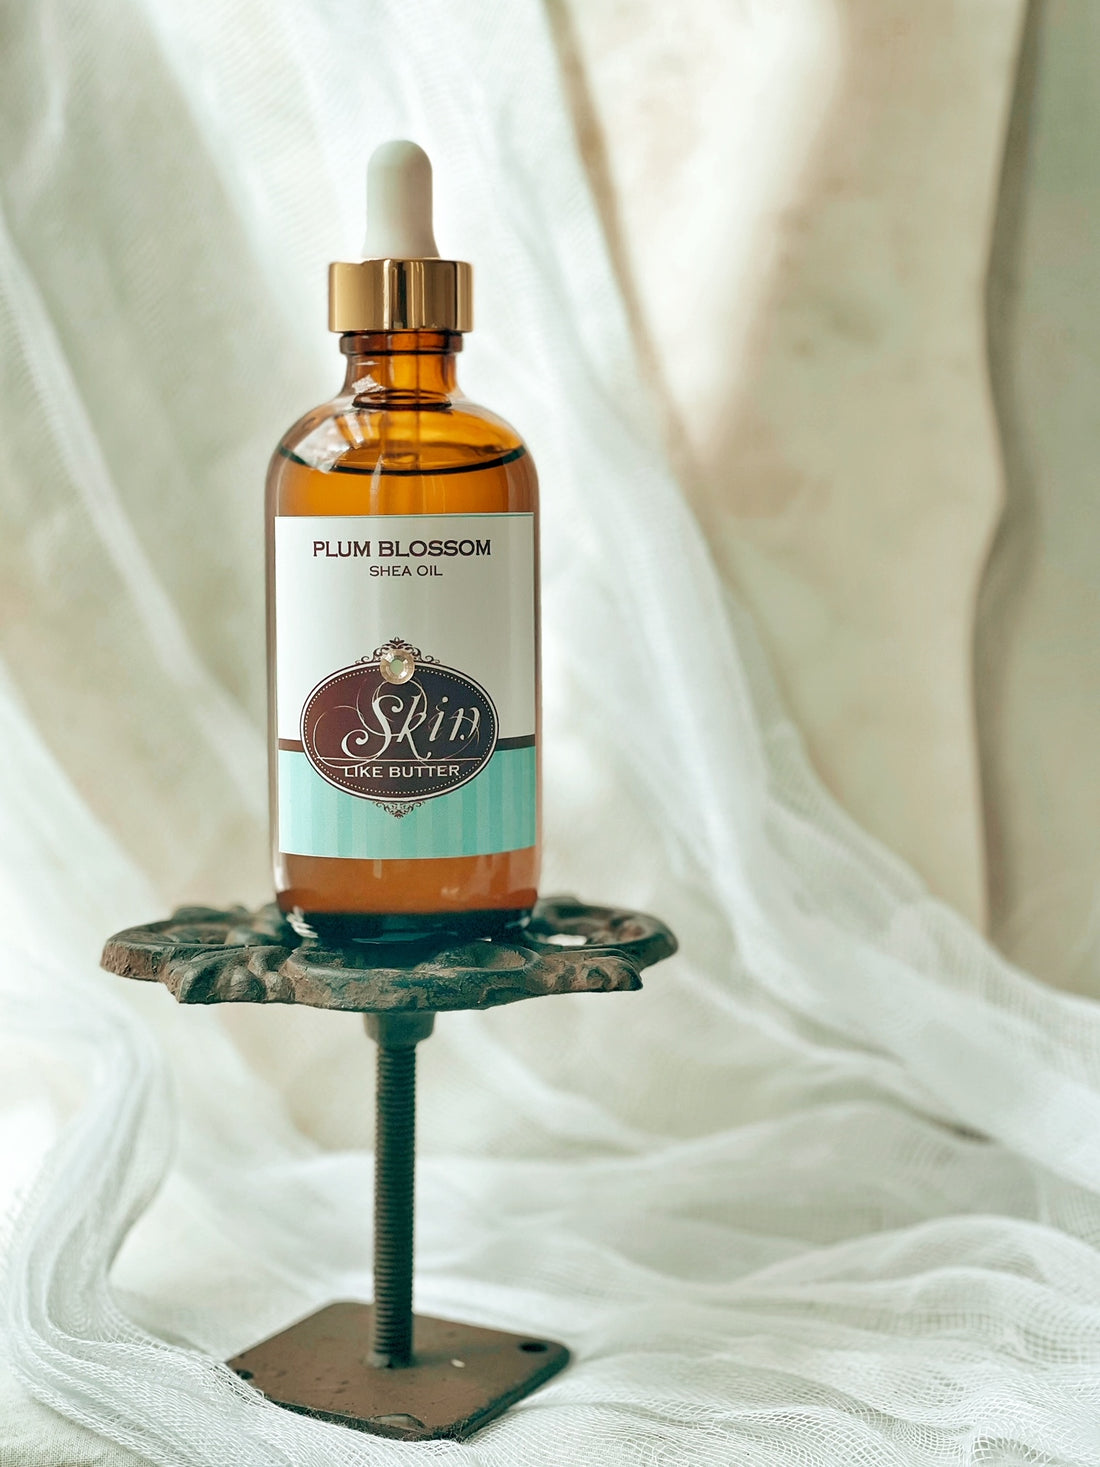 PLUM BLOSSOM - Scented Shea Oil - in 4 oz bottles, highly moisturizing